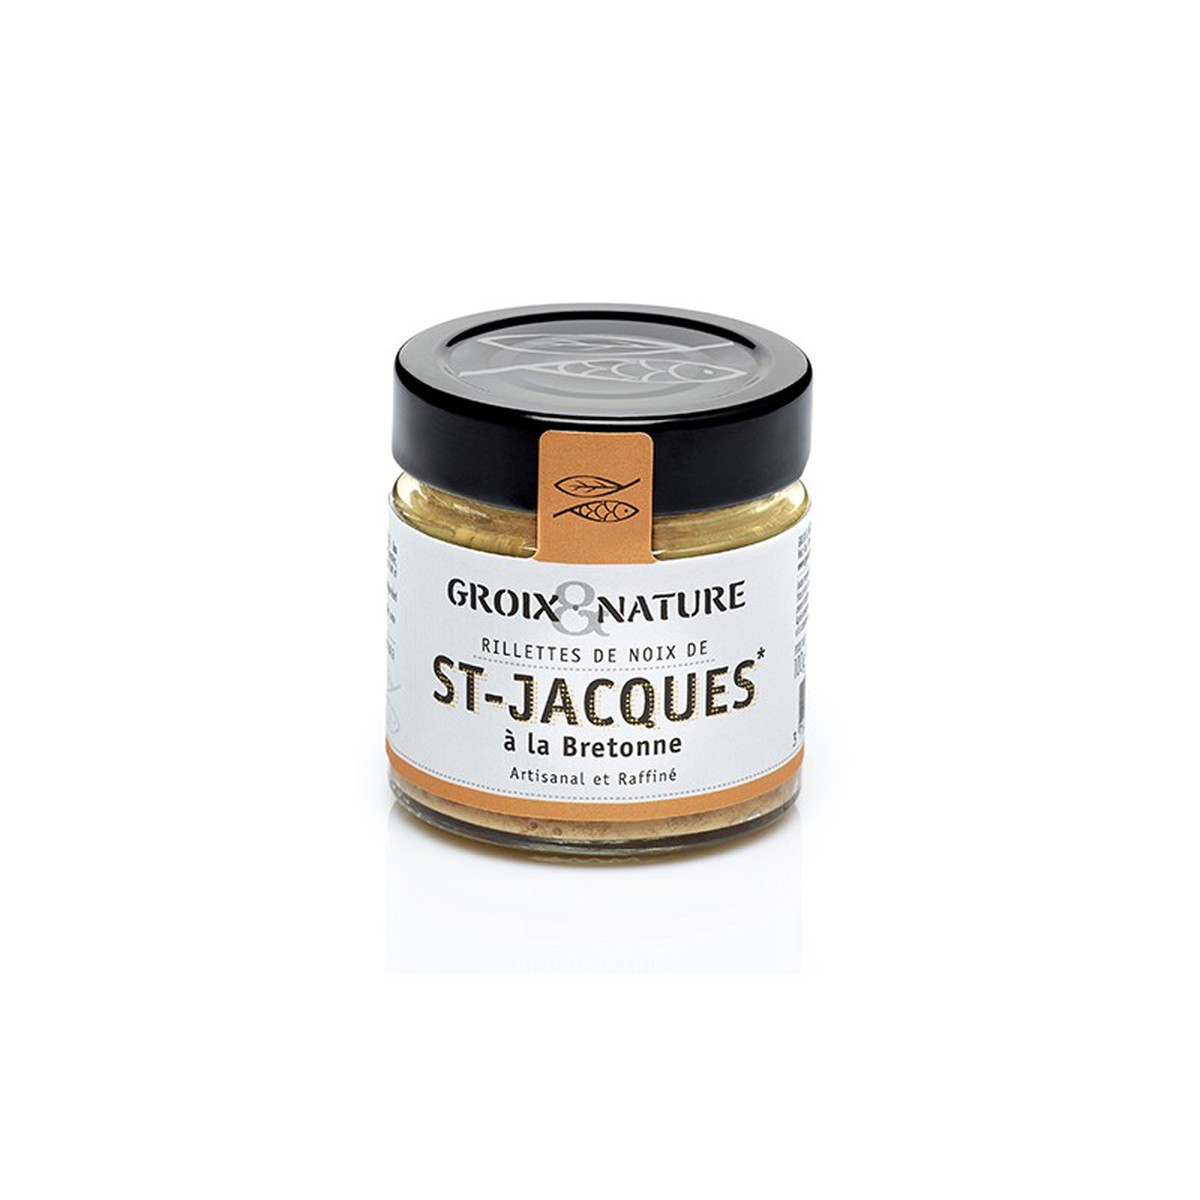 Groix et Nature  Rillettes de Noix de St Jacques à la Bretonne 100g  100g